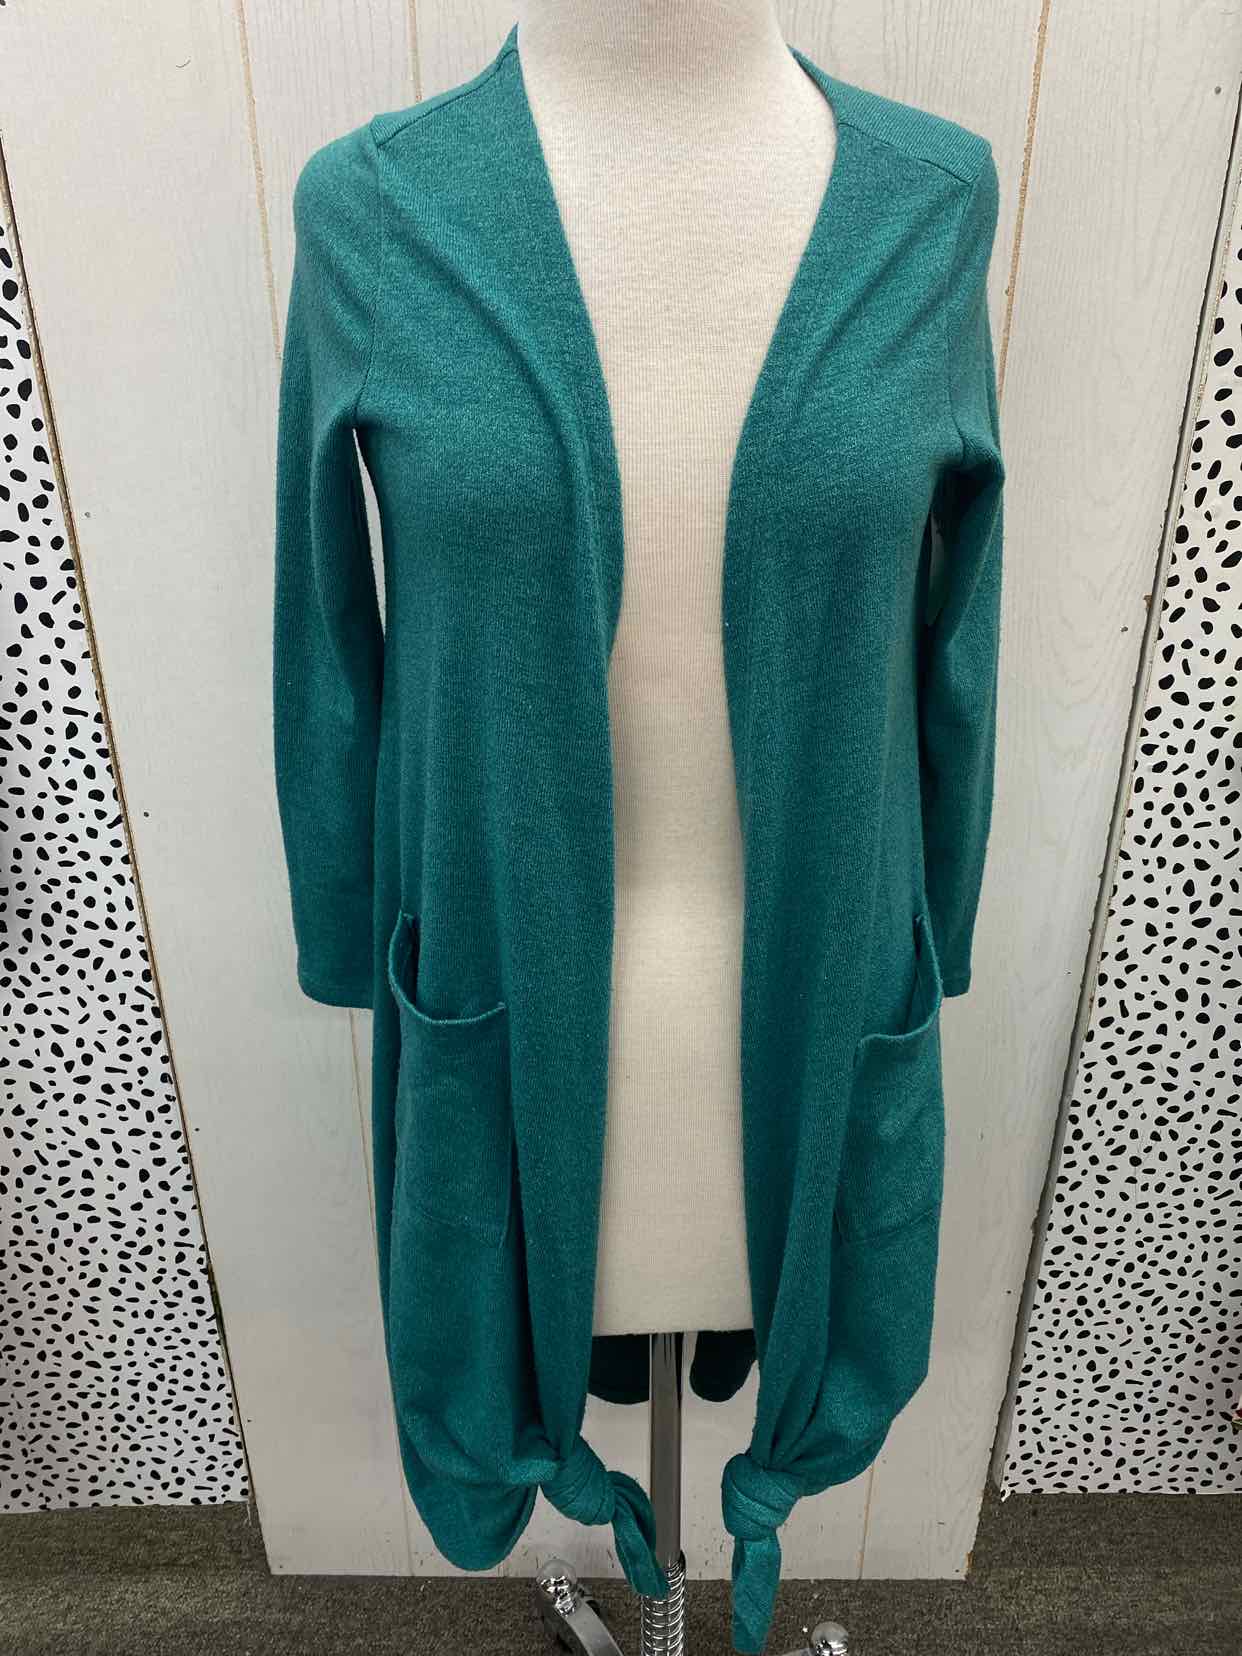 Lularoe Green Womens Size Small Sweater